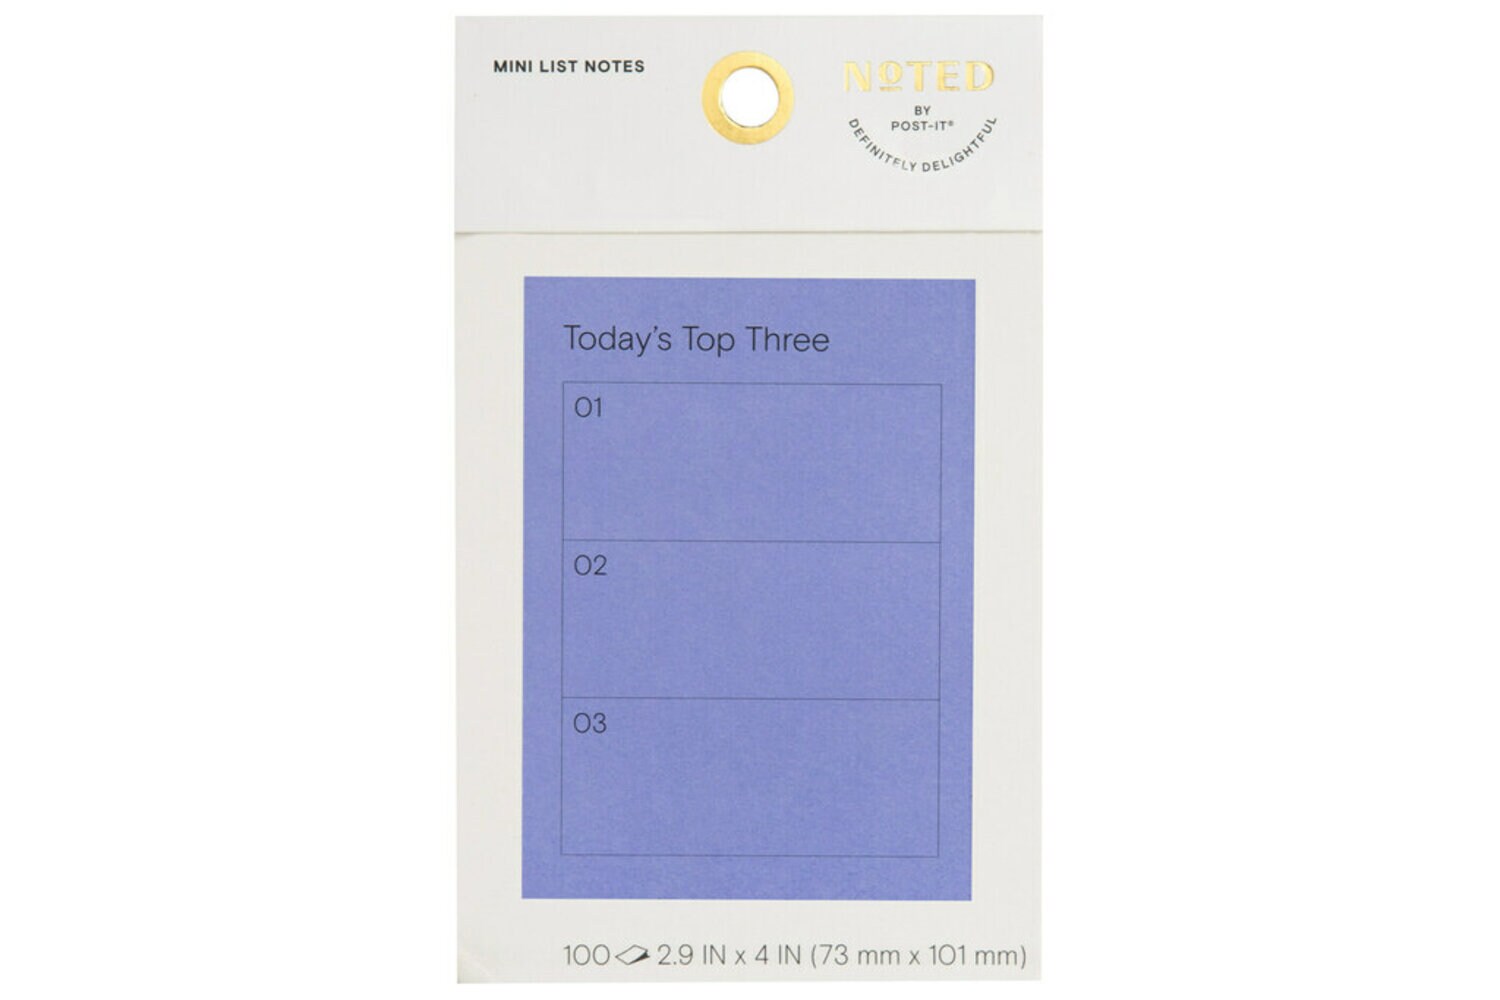 7100275965 - Post-it Mini List Notes NTD6-34-3, 4 in x 2.9 in (101 mm x 73 mm)